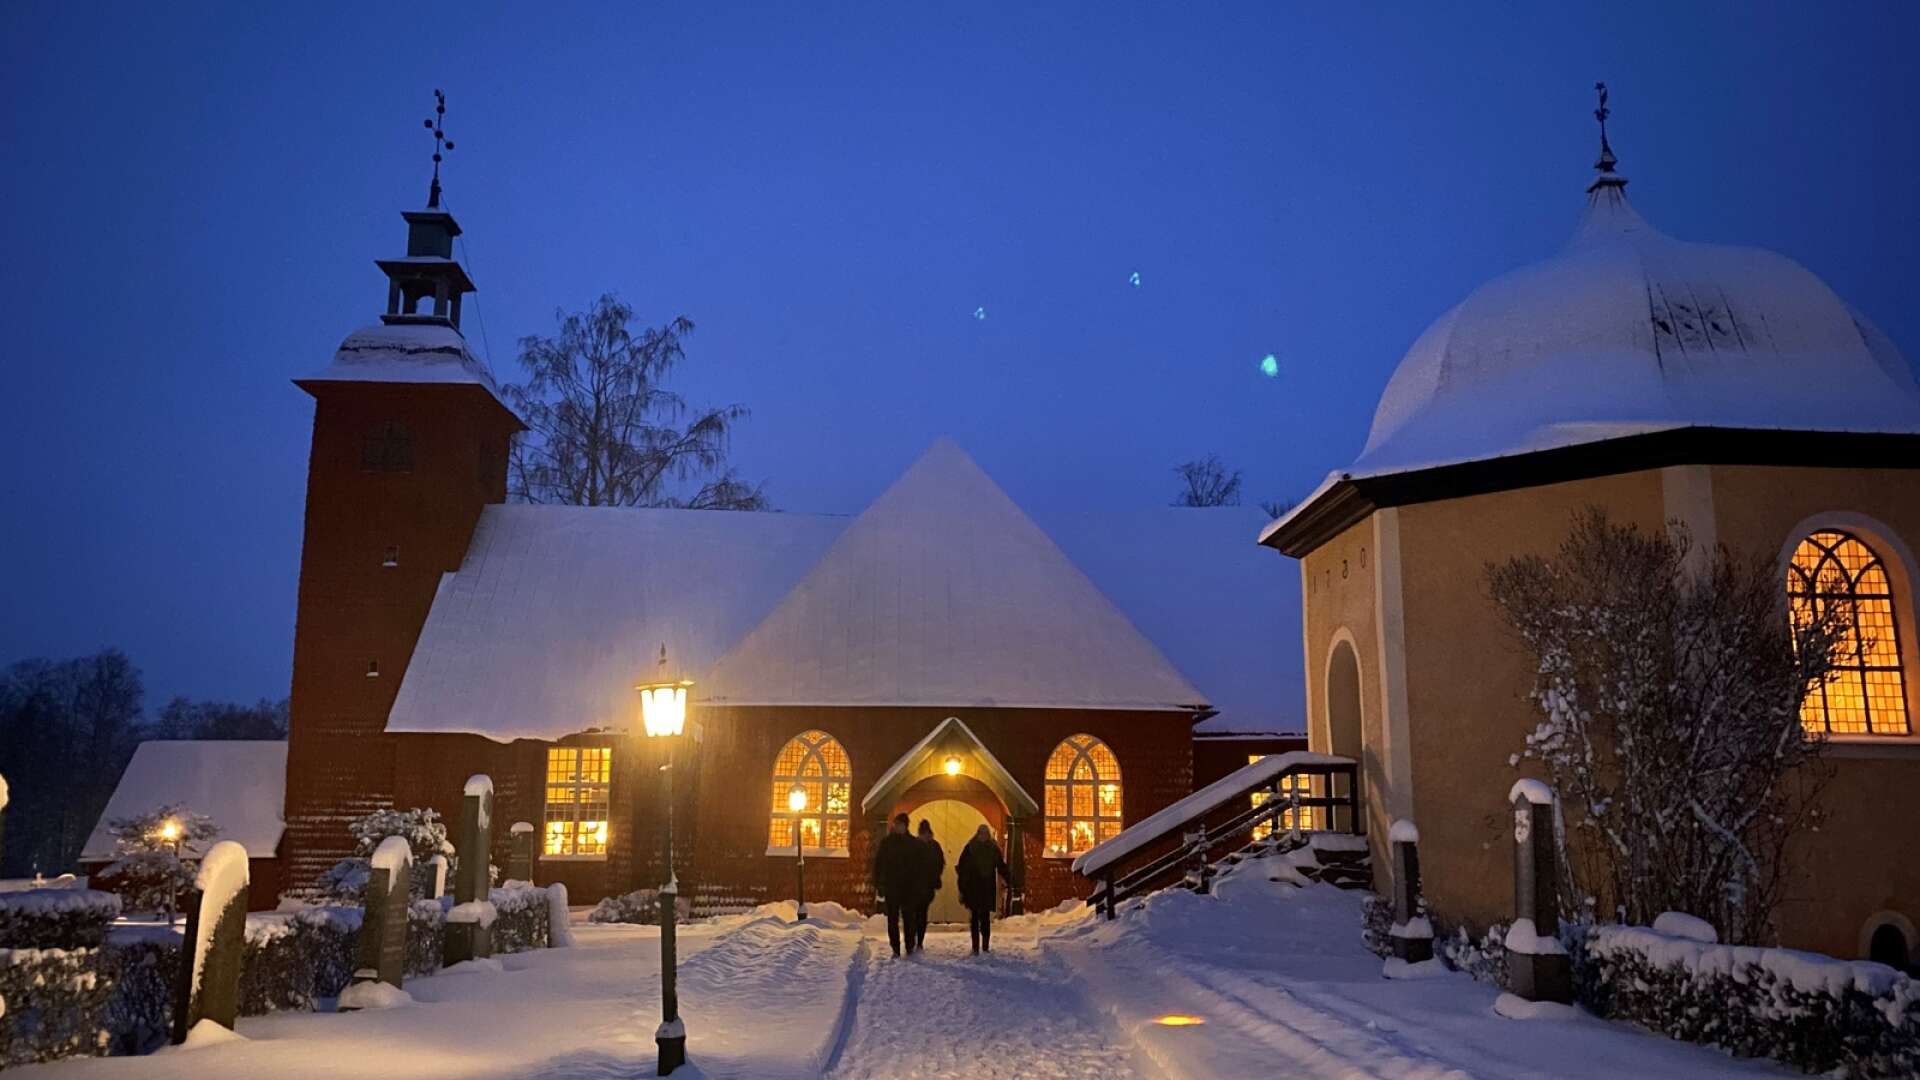 Trots den tidiga timmen och snöfall var det många som tog sig till Bjurtjärns kyrka på juldagens morgon för den traditionsenliga julottan.